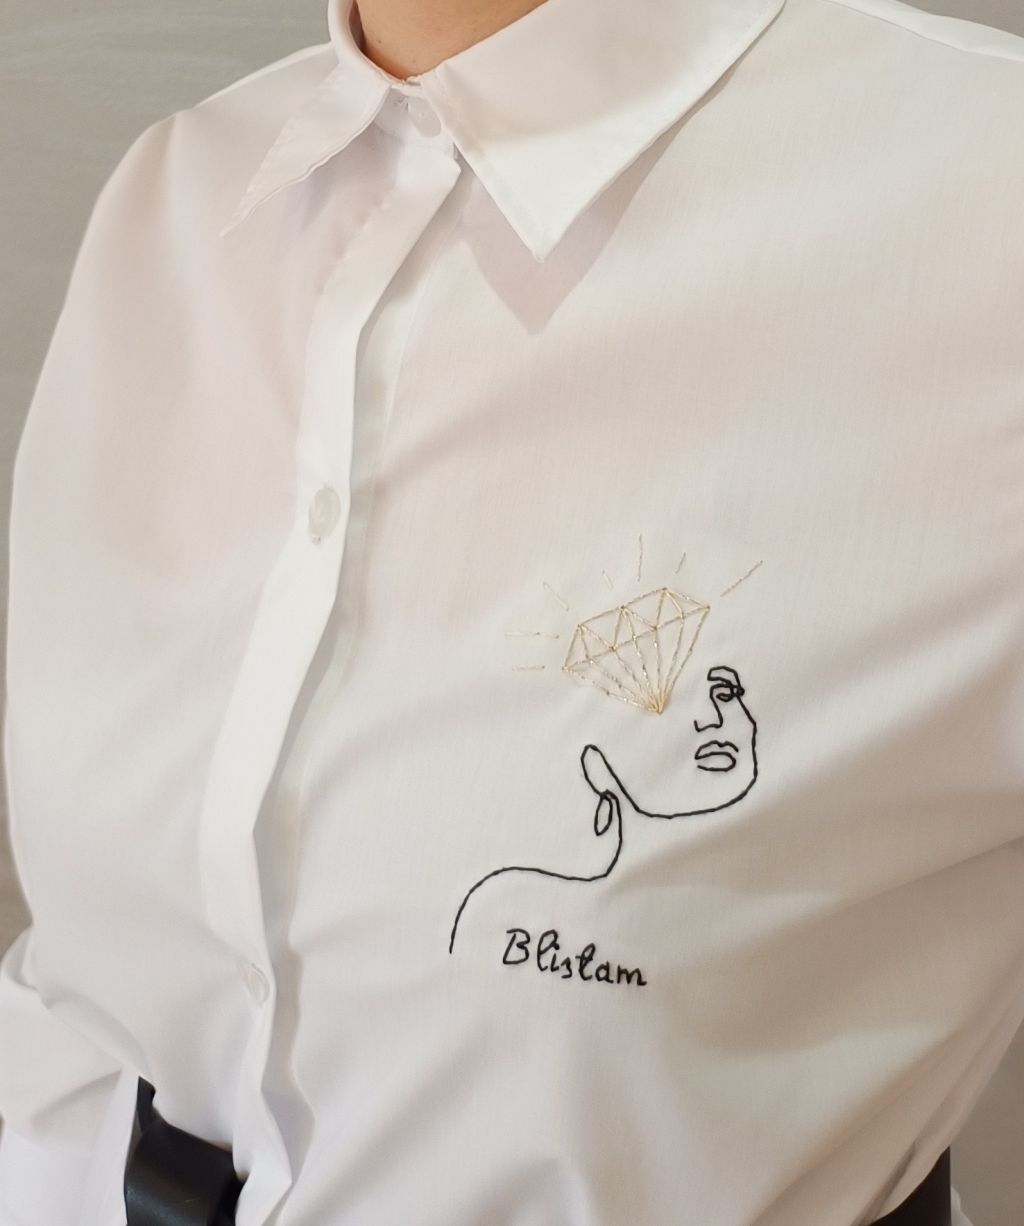 Motivacione košulje - jedan od budućih proizvoda Vezionarke